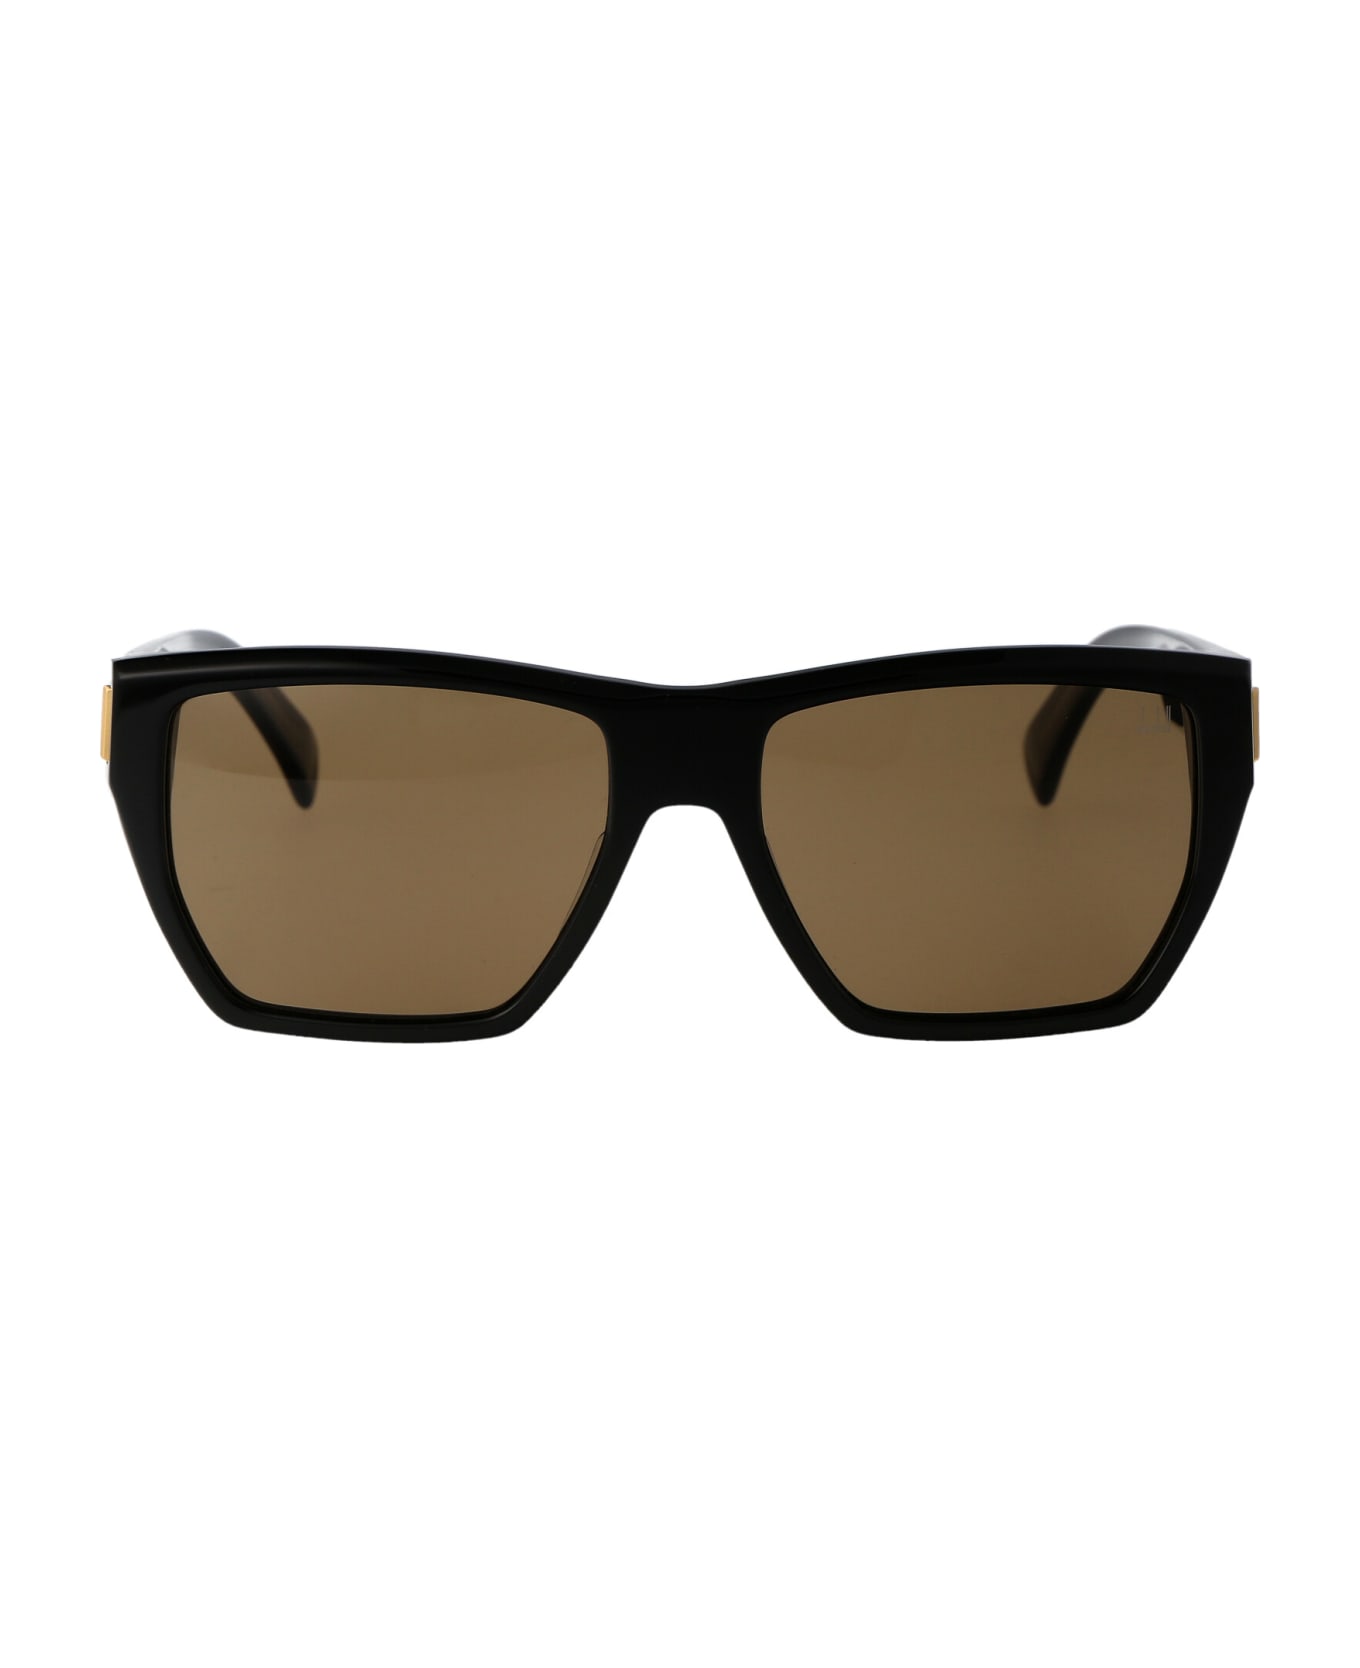 Dunhill Du0031s Sunglasses MAX - 001 Ocean Sunglasses MAX Occhiali Da Sole Australia